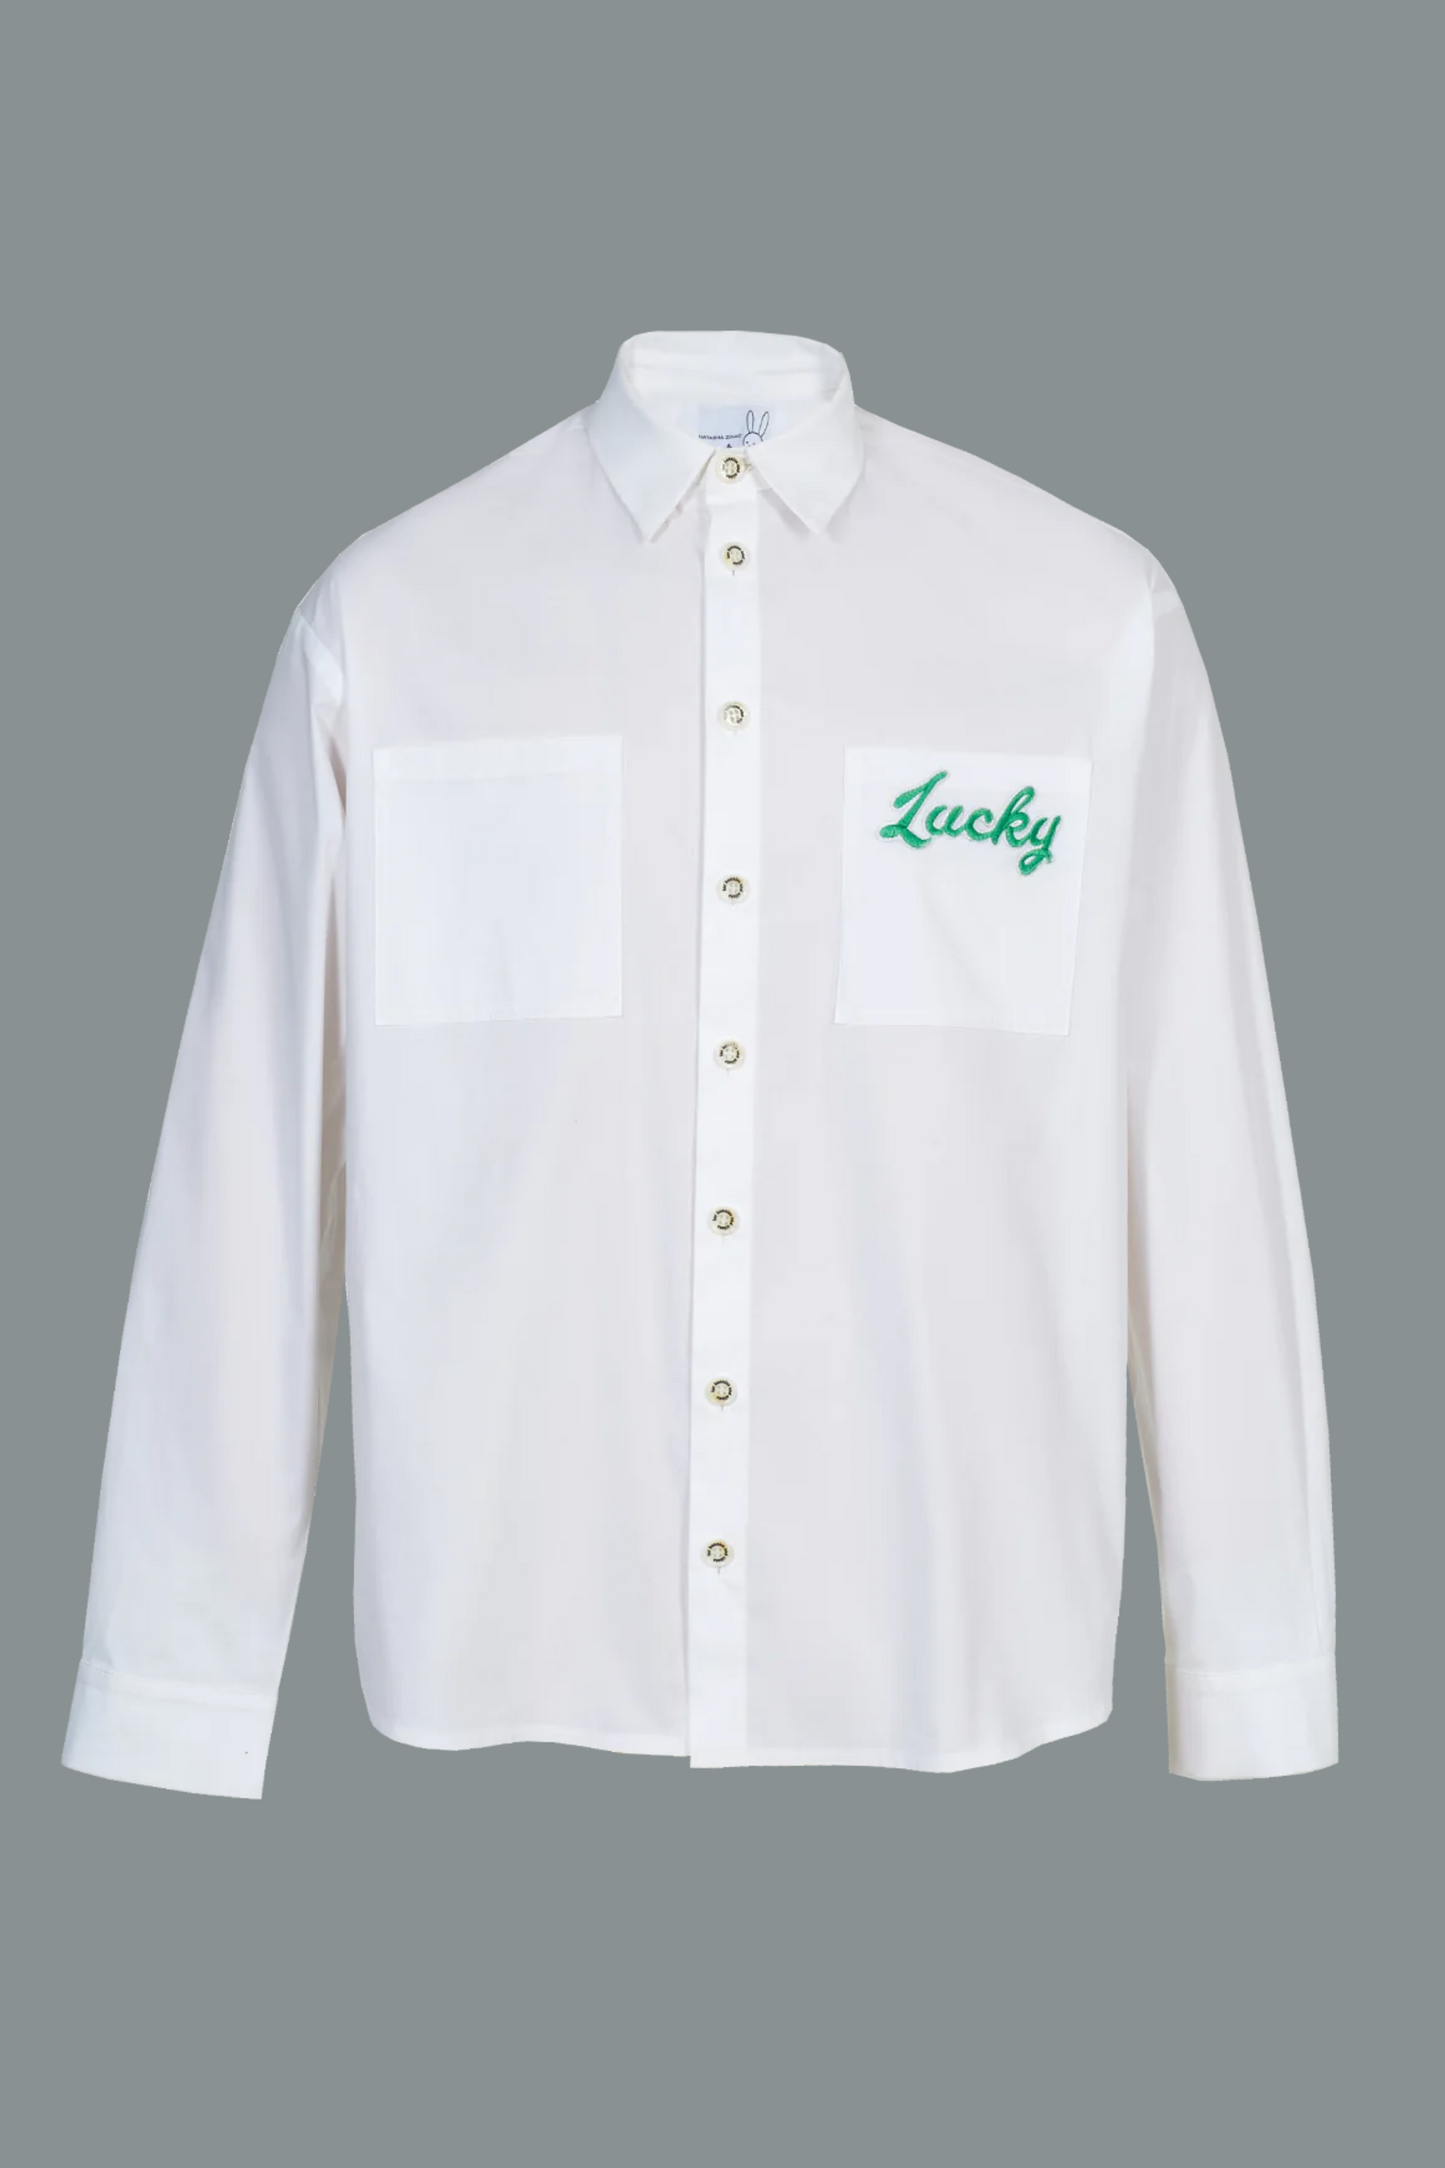 "Lucky" Print Button Up Shirt